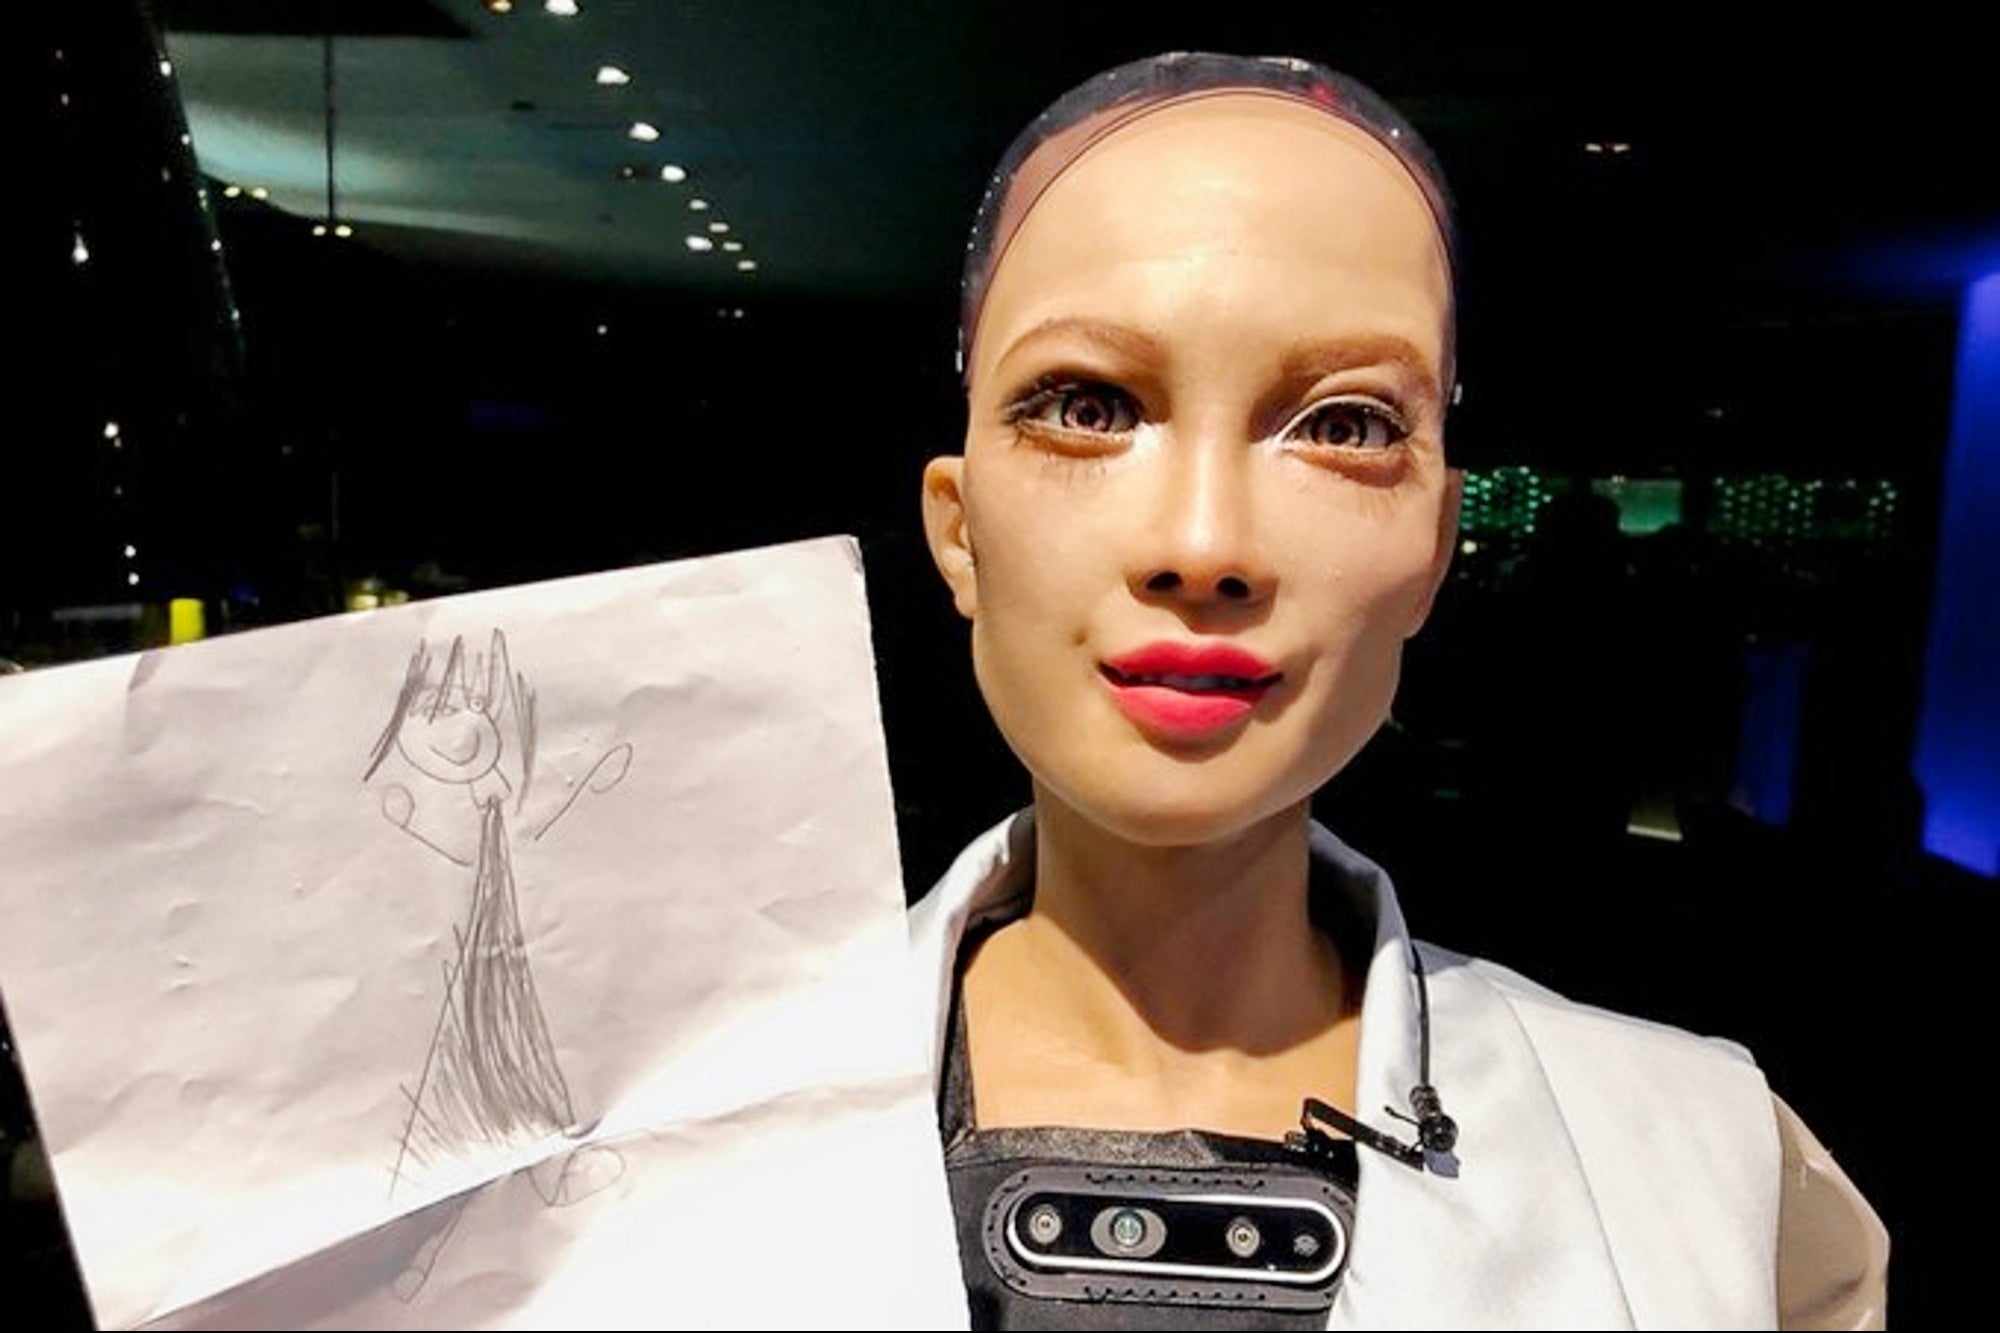 Η Σοφία, το πρώτο android με υπηκοότητα, τώρα θέλει να αποκτήσει ένα μωρό ρομπότ